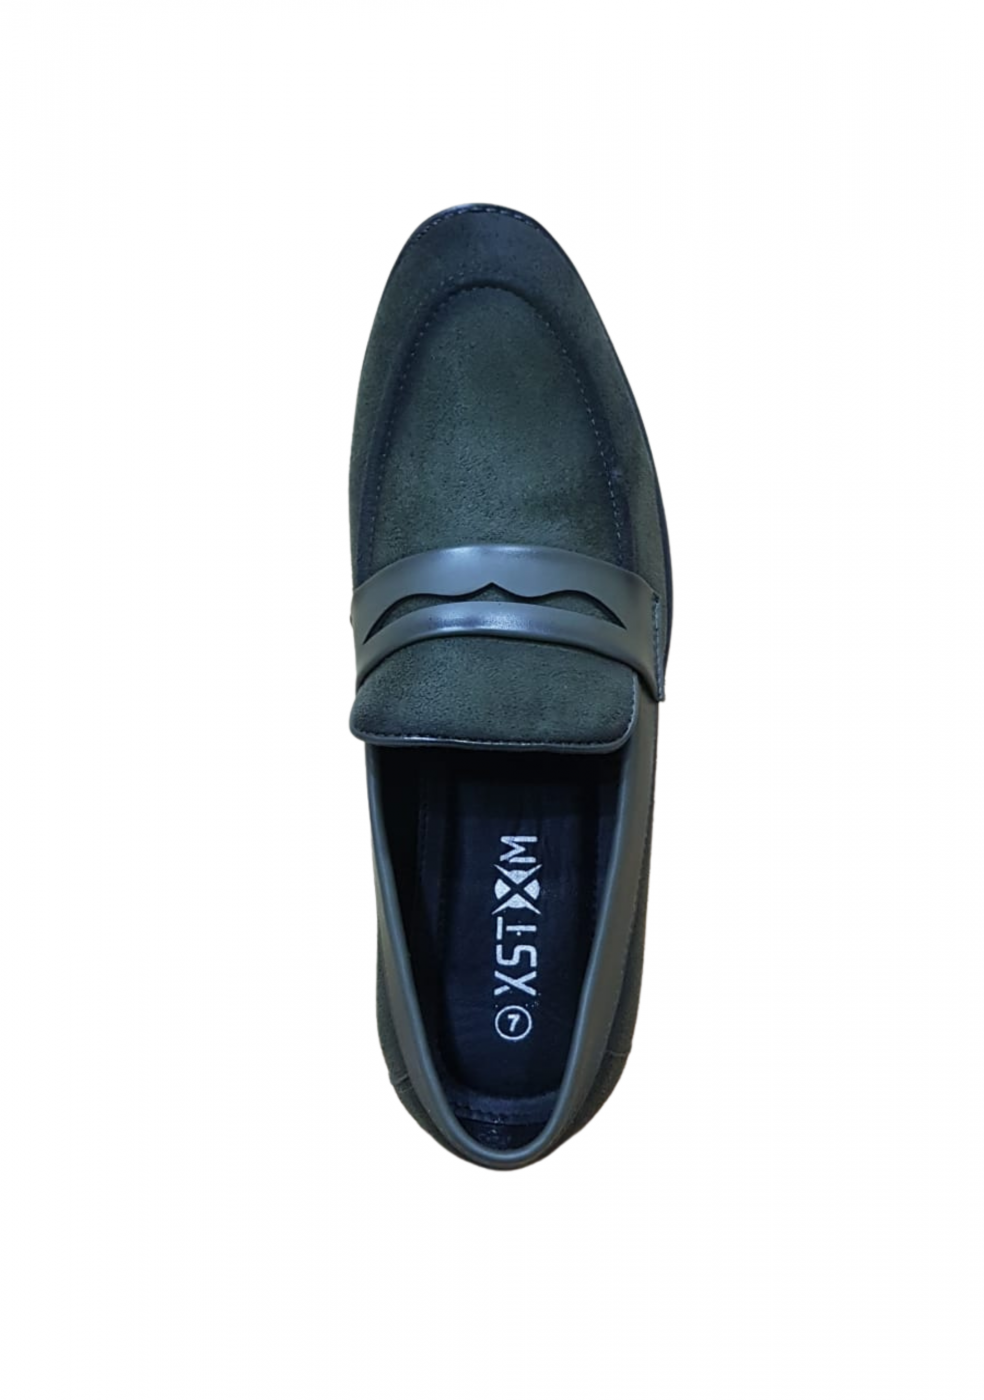 XSTOM Formal Green Color Shoes For Men